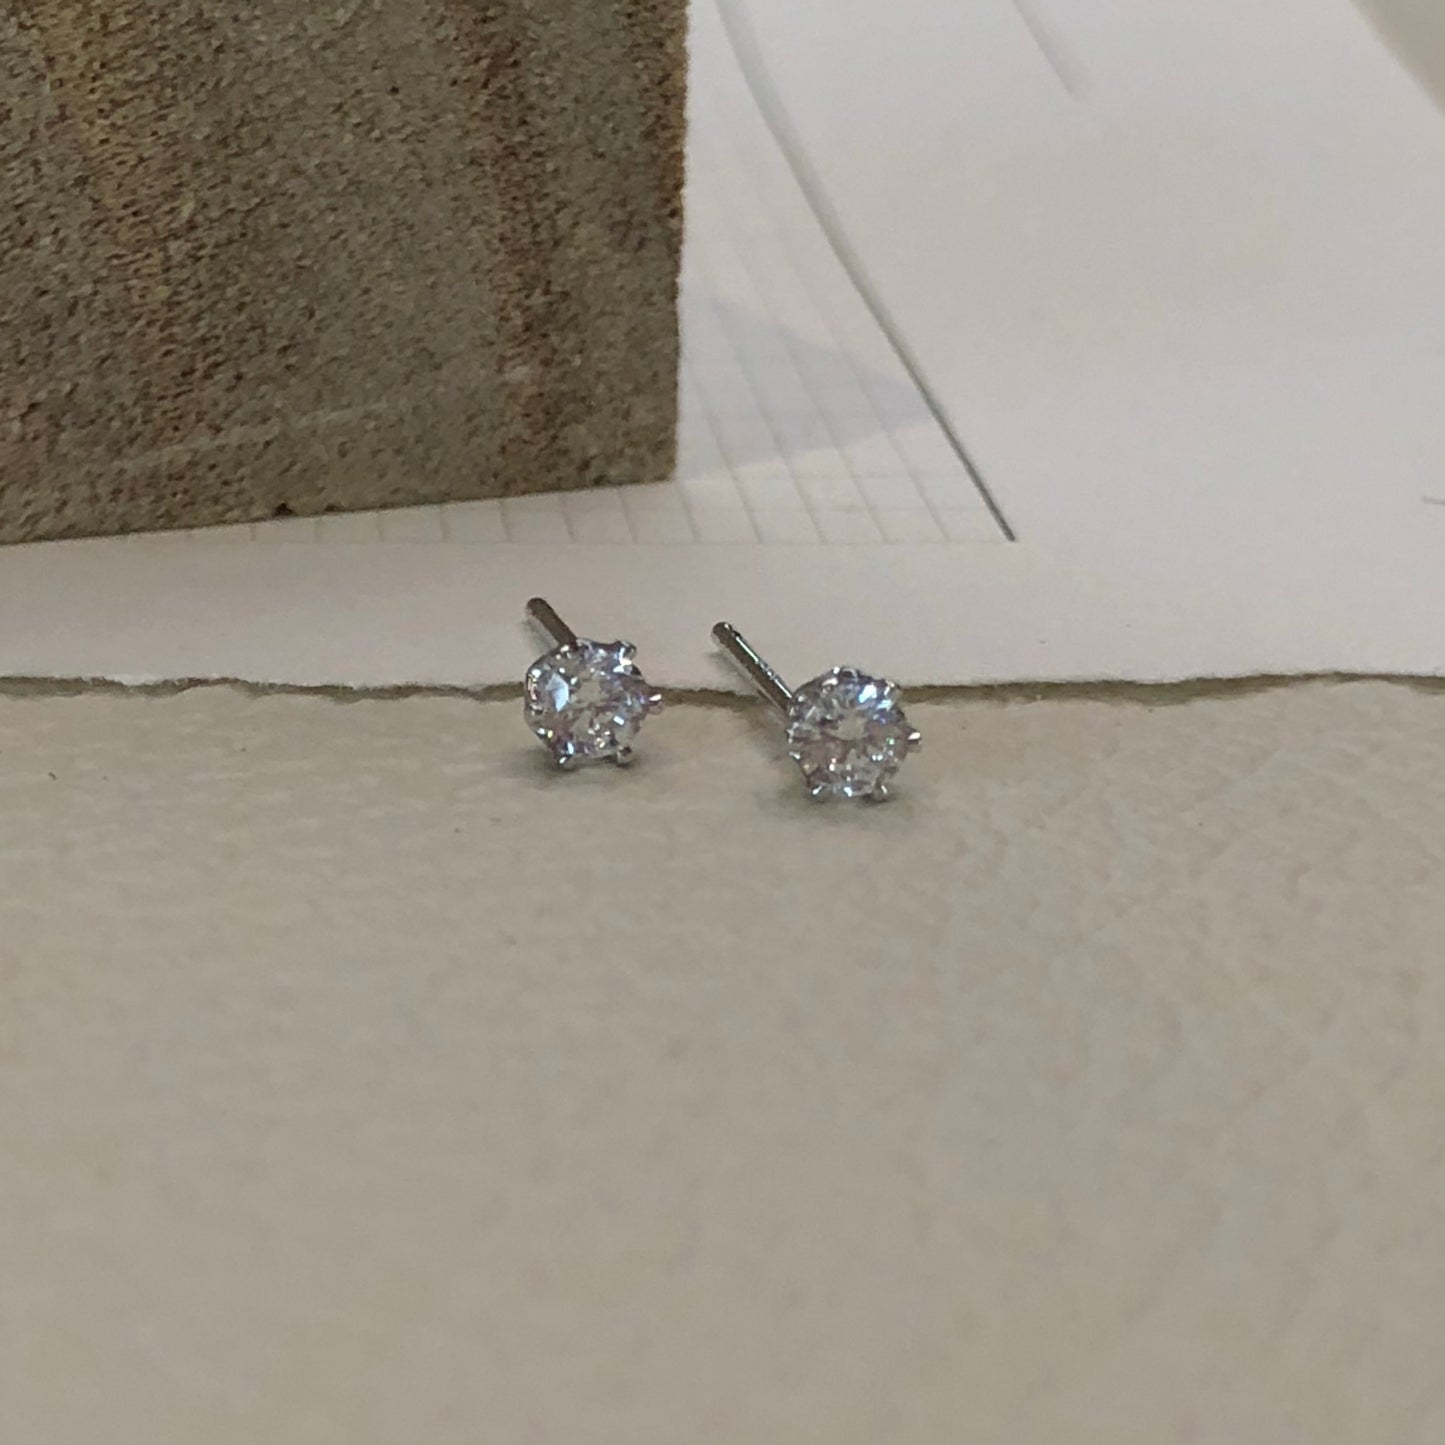 4. Diamante Earrings